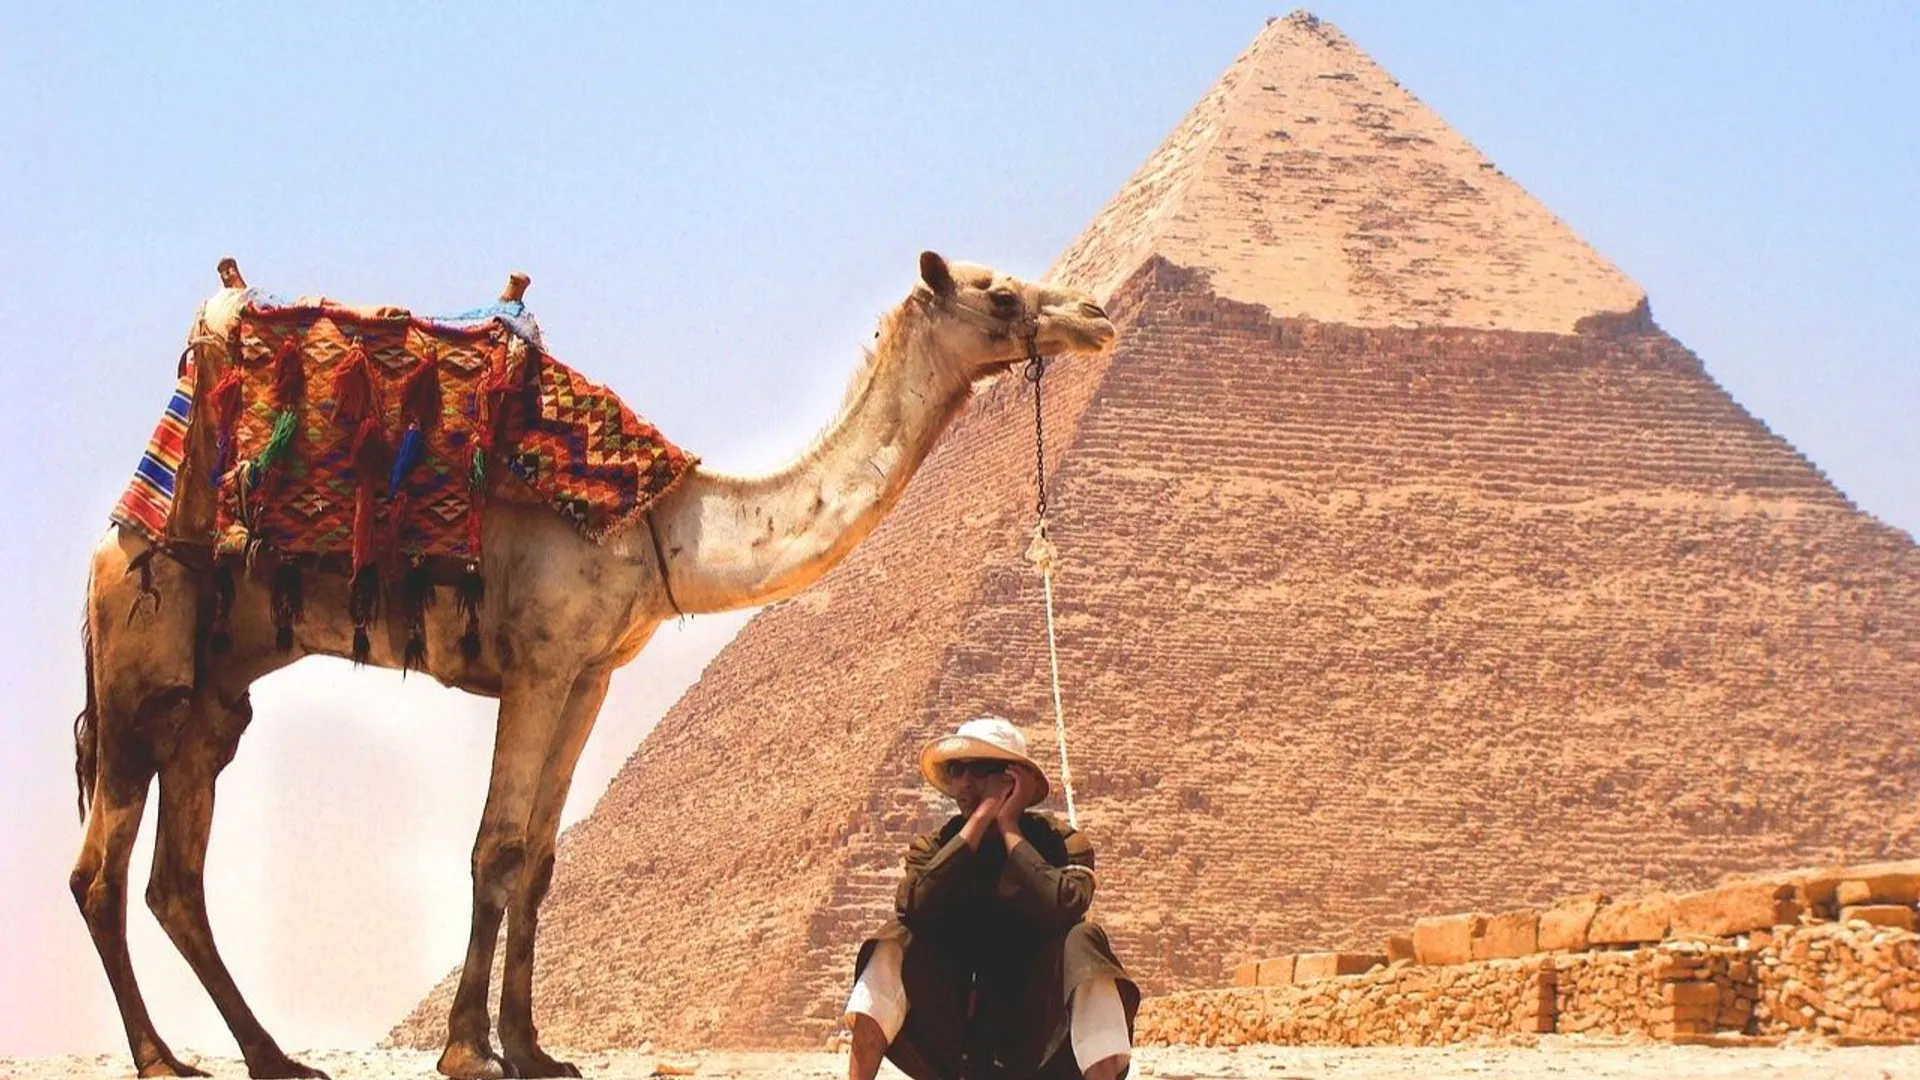 Podróże śladami zwierząt: Czy przejażdżki na wielbłądach powinny być zakazane?